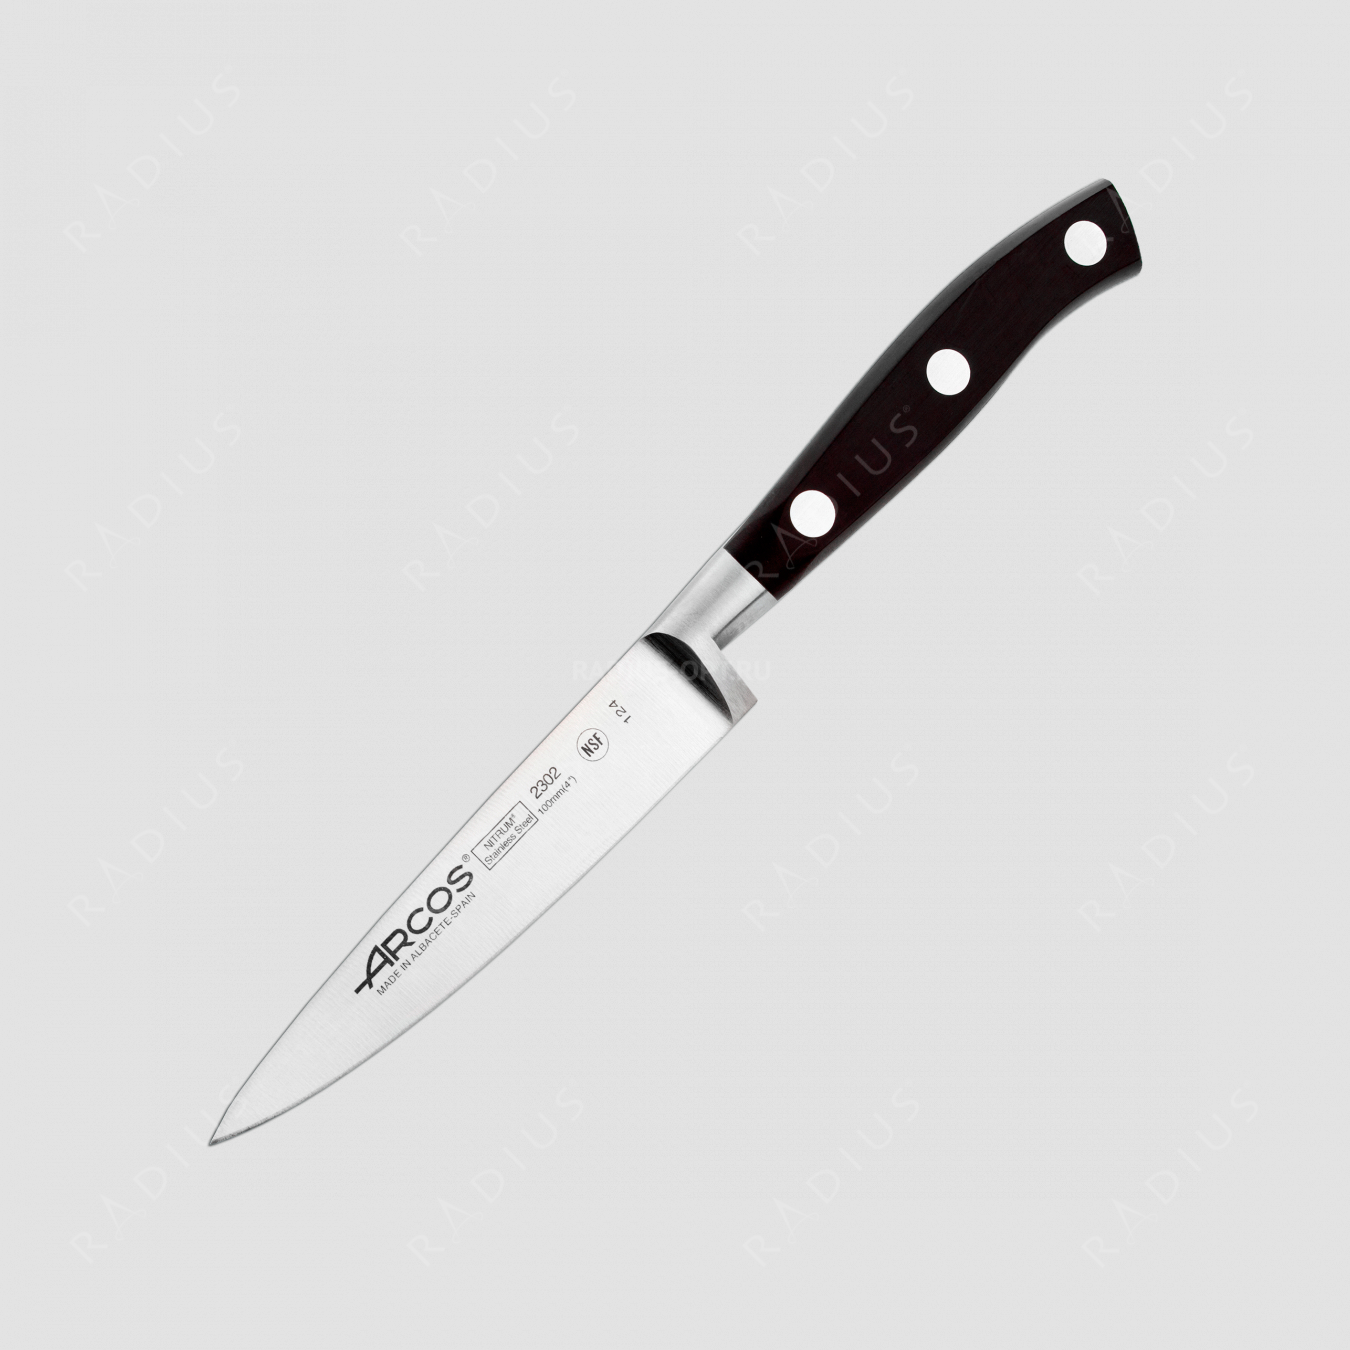 Нож кухонный для чистки овощей 10 см, серия Riviera, ARCOS, Испания